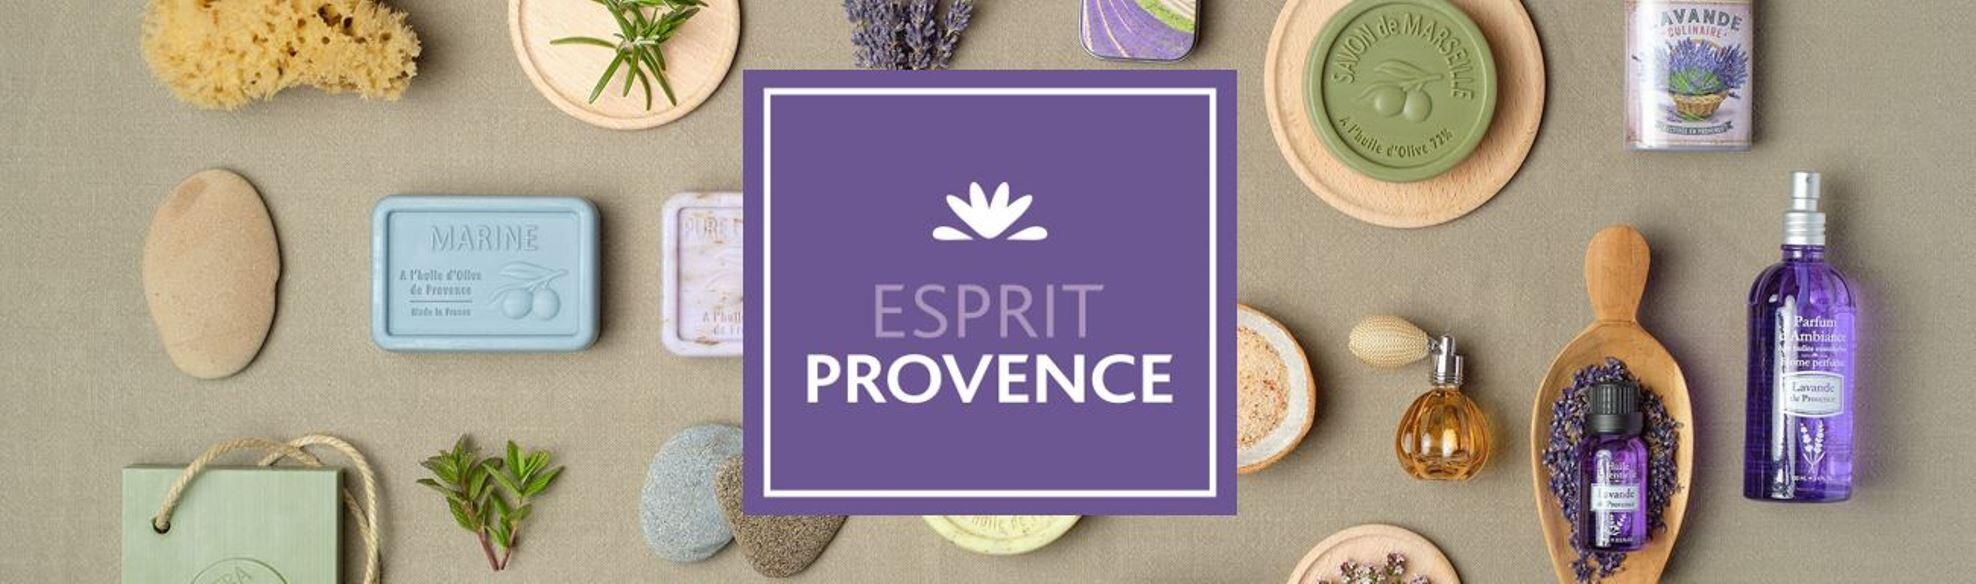 Petit sachet brodé de Fleurs de Lavande & Lavandin - Esprit Provence